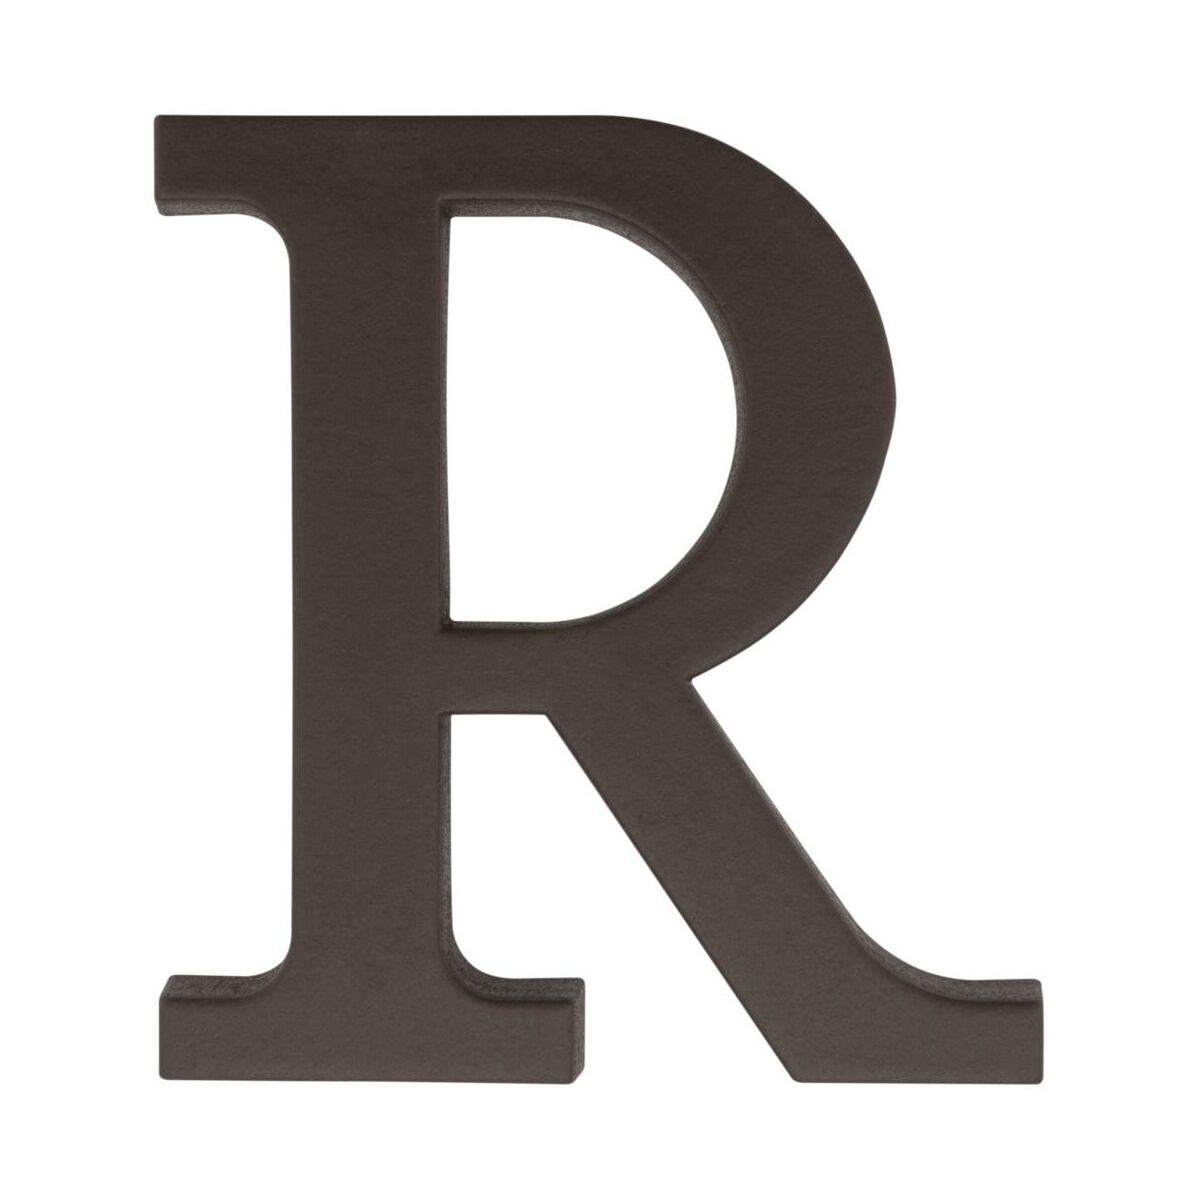 Litera R wys.9 cm plastikowa brązowa